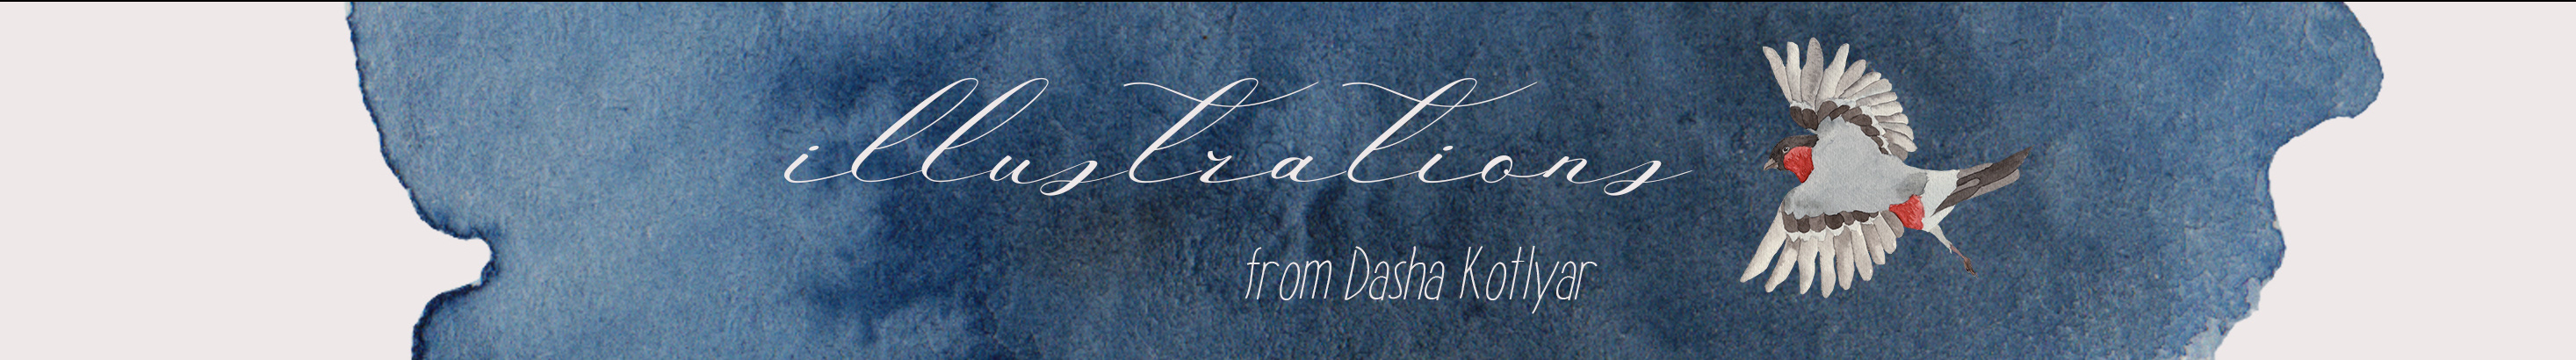 Daria Kotliar's profile banner